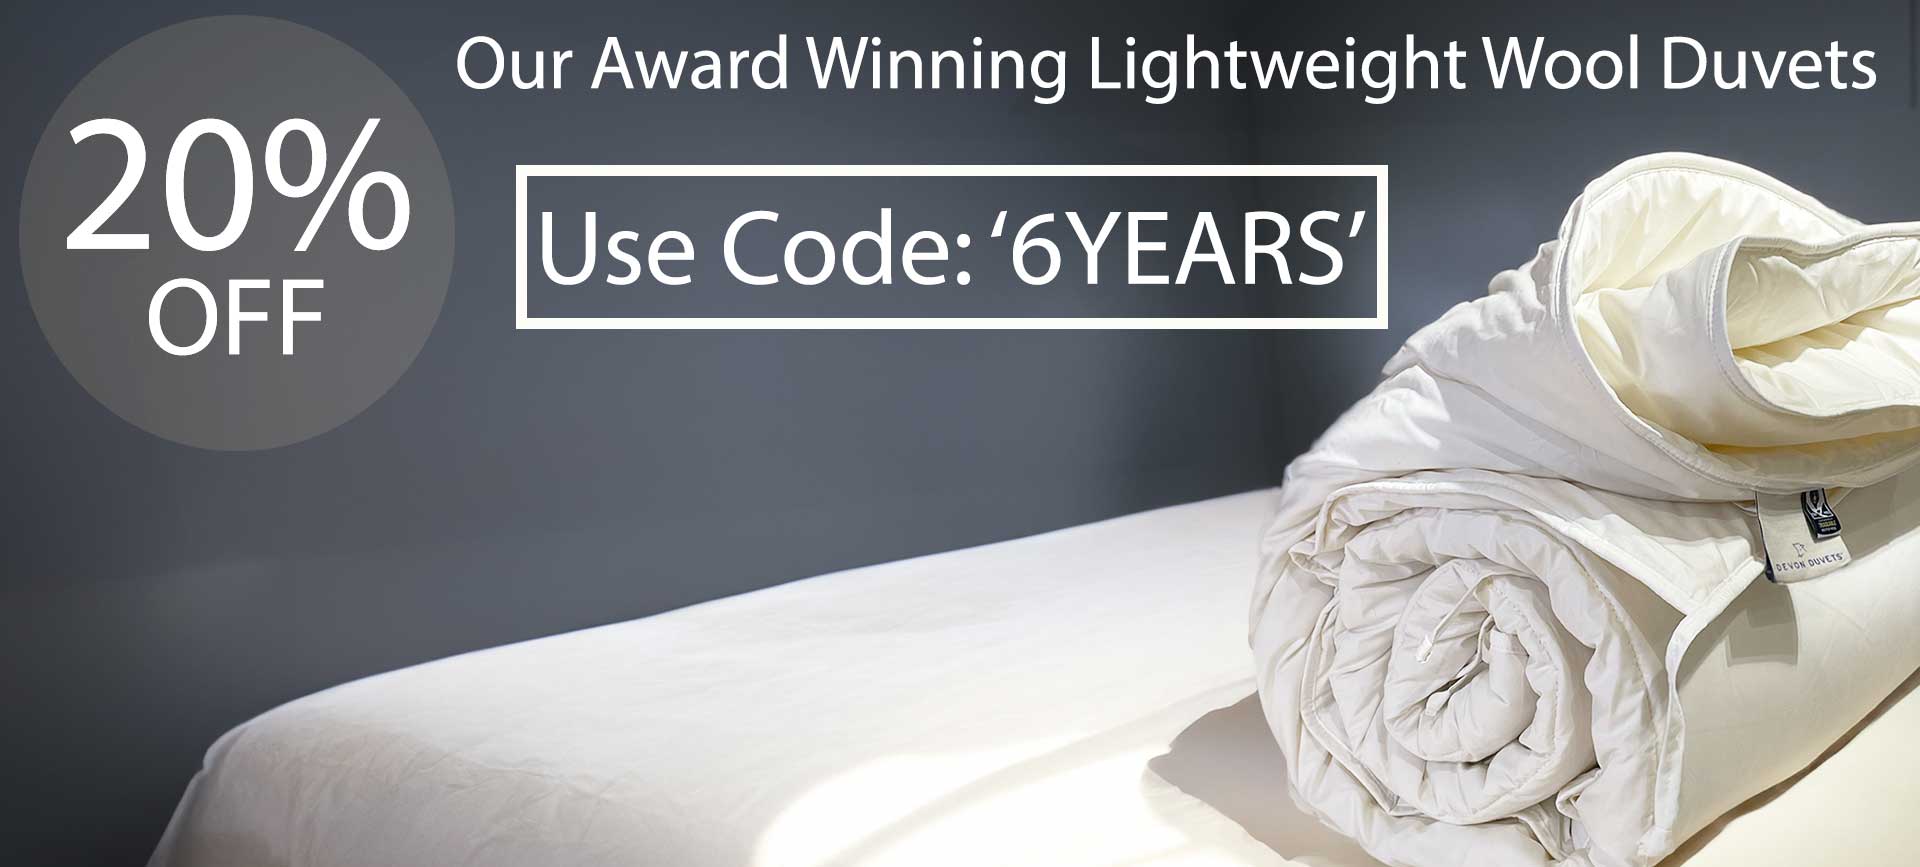 Award winning Lightweight wool duvets sale discount code.